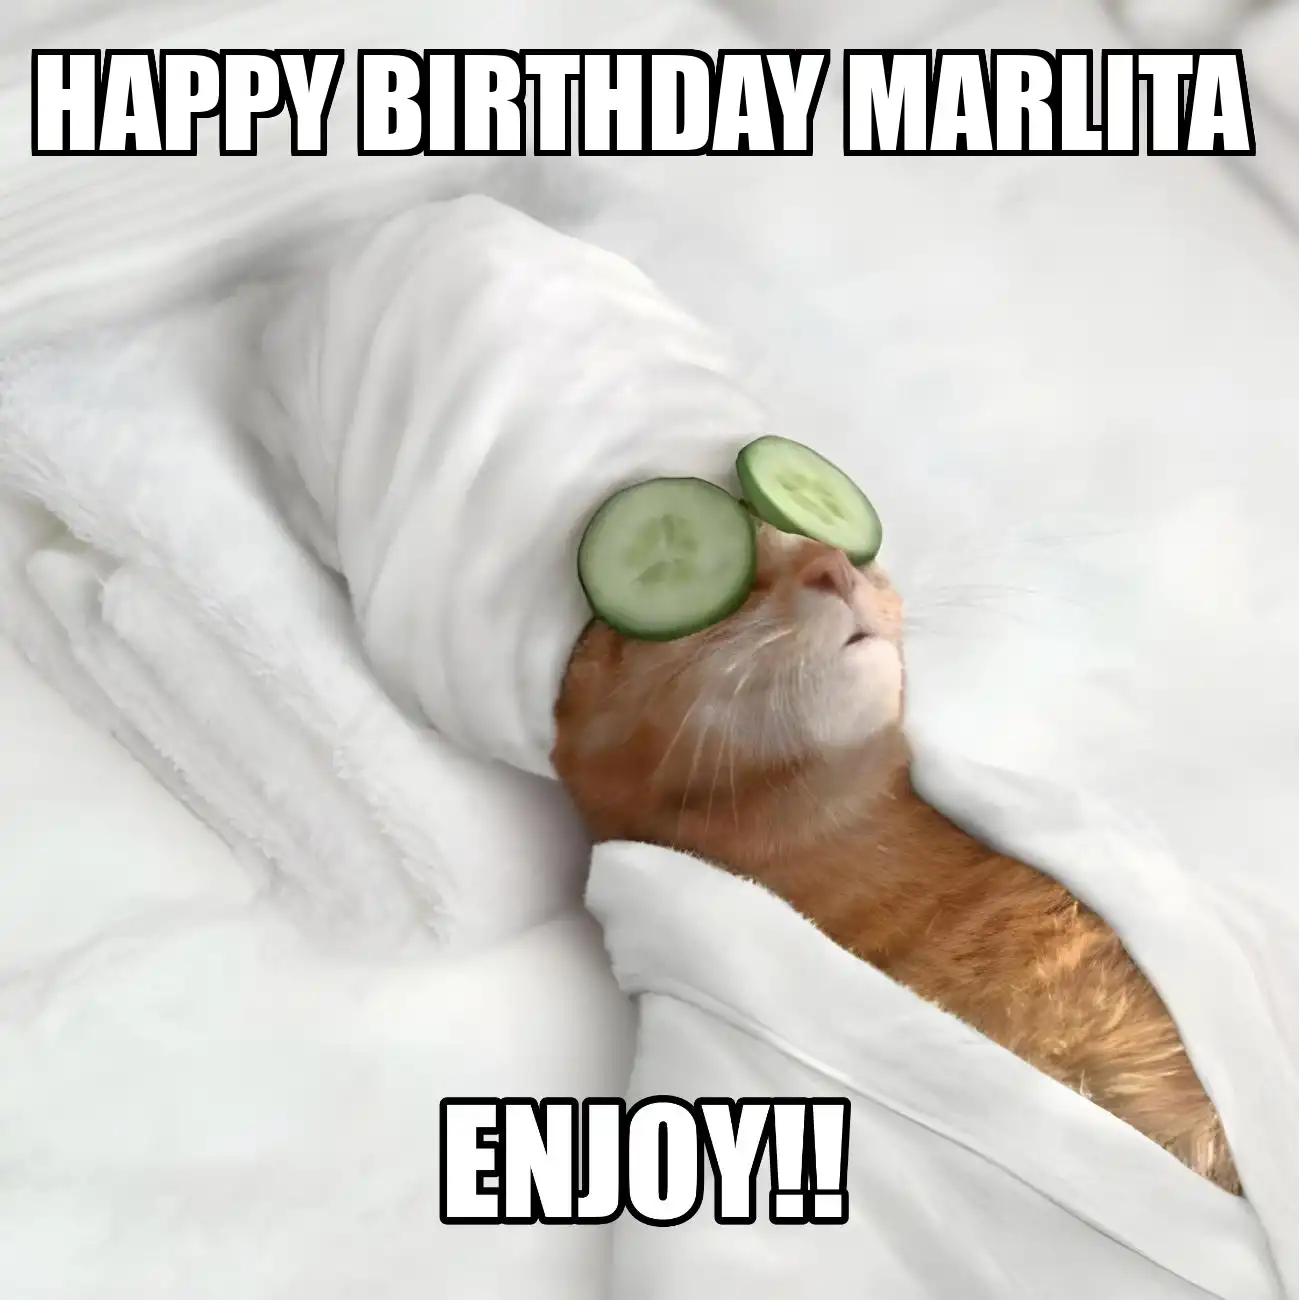 Happy Birthday Marlita Enjoy Cat Meme